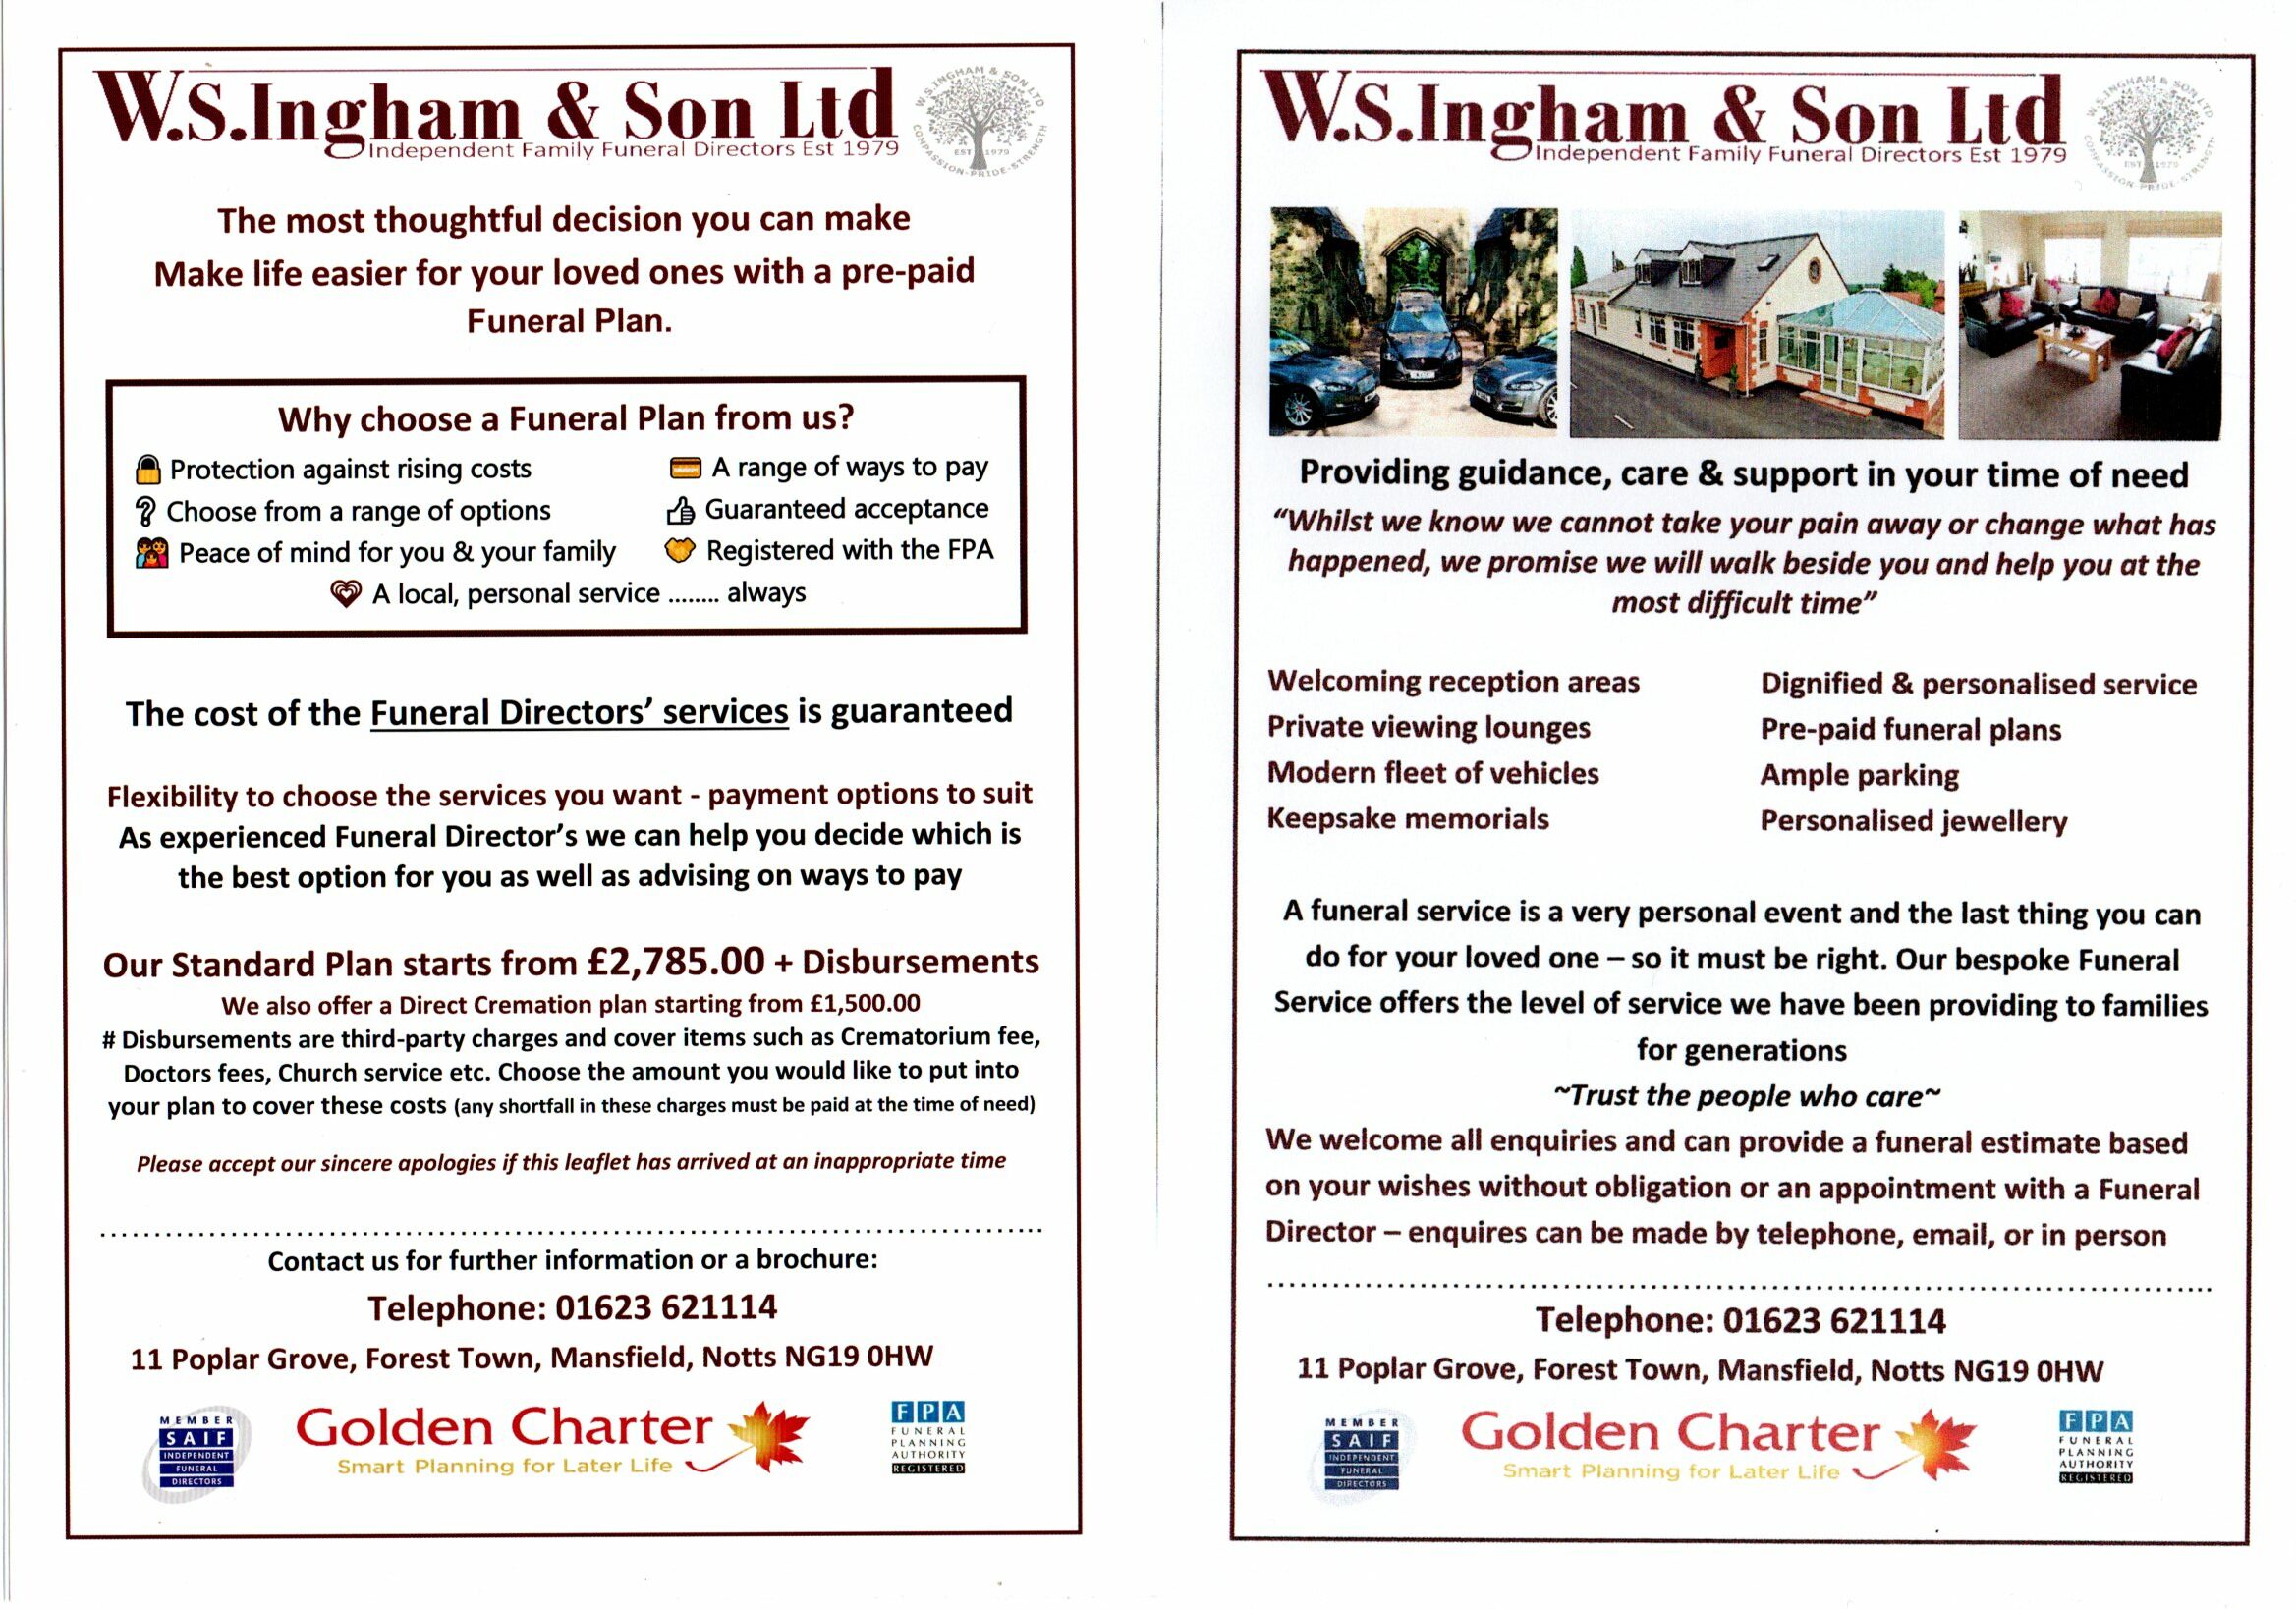 W.S. Ingham & Son Ltd